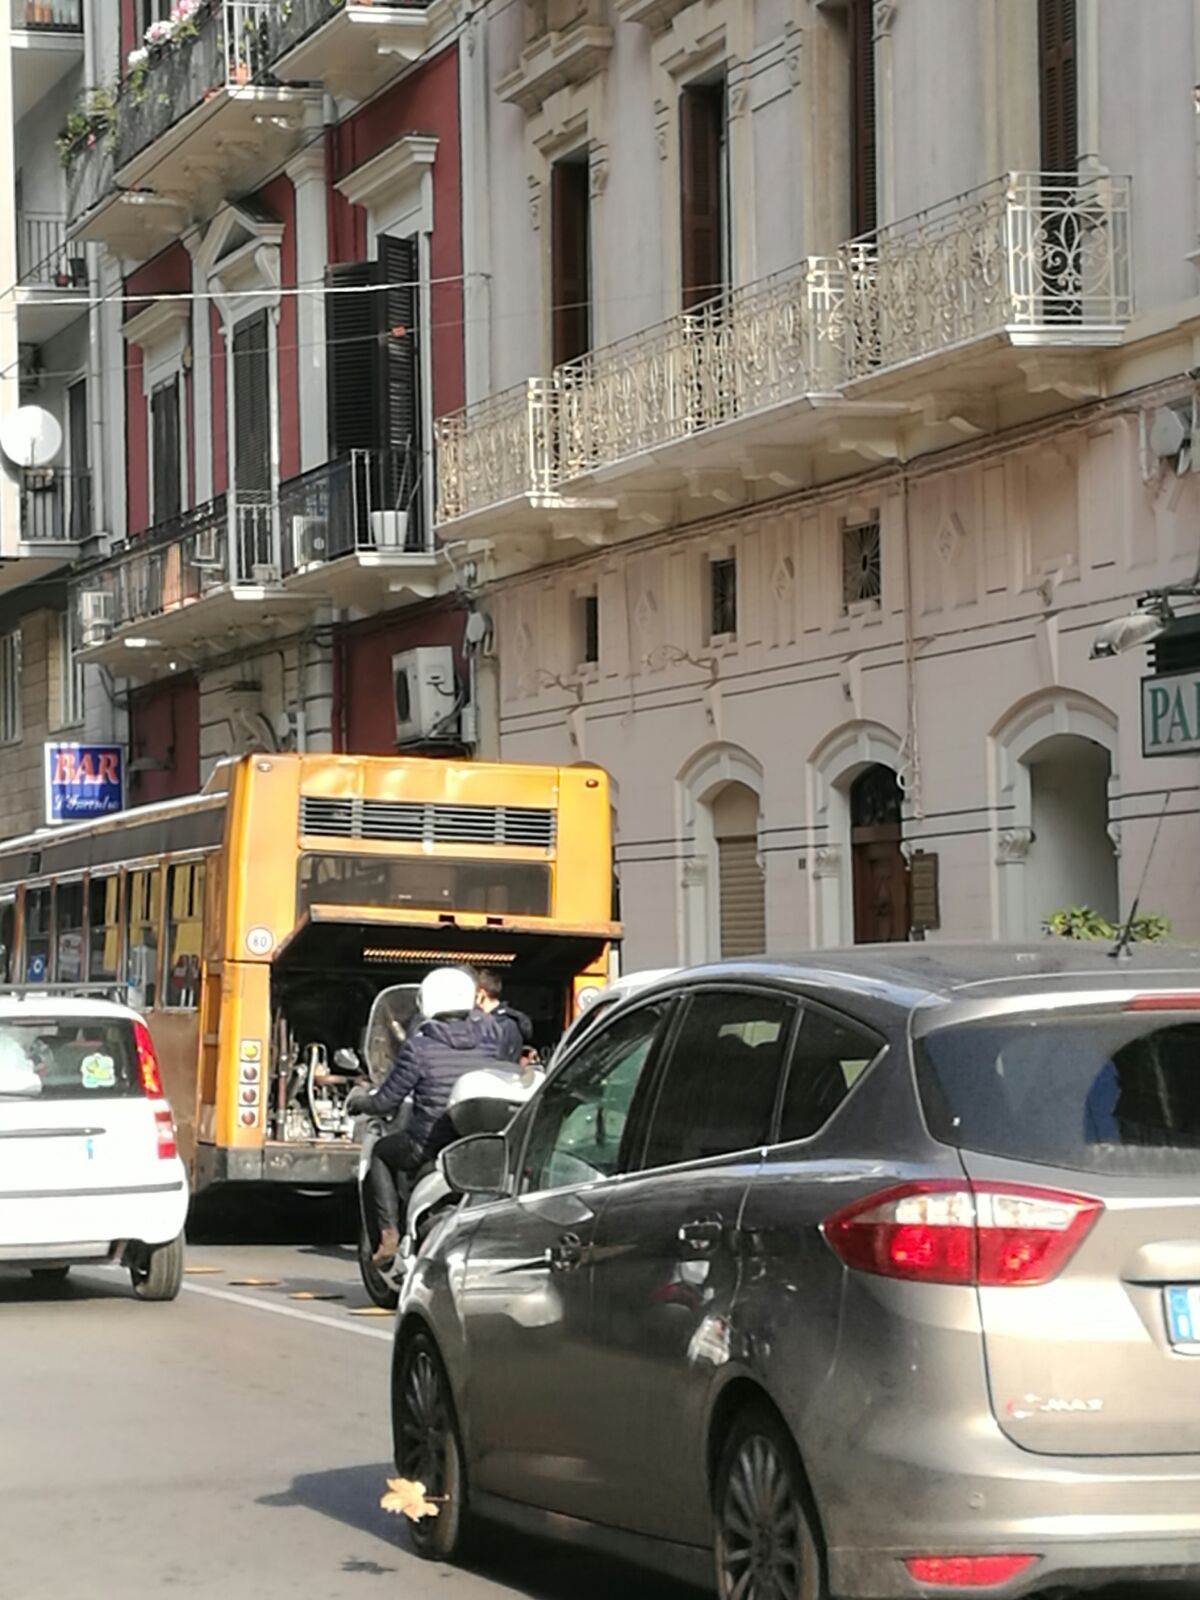 L'autobus in avaria in via De Giosa